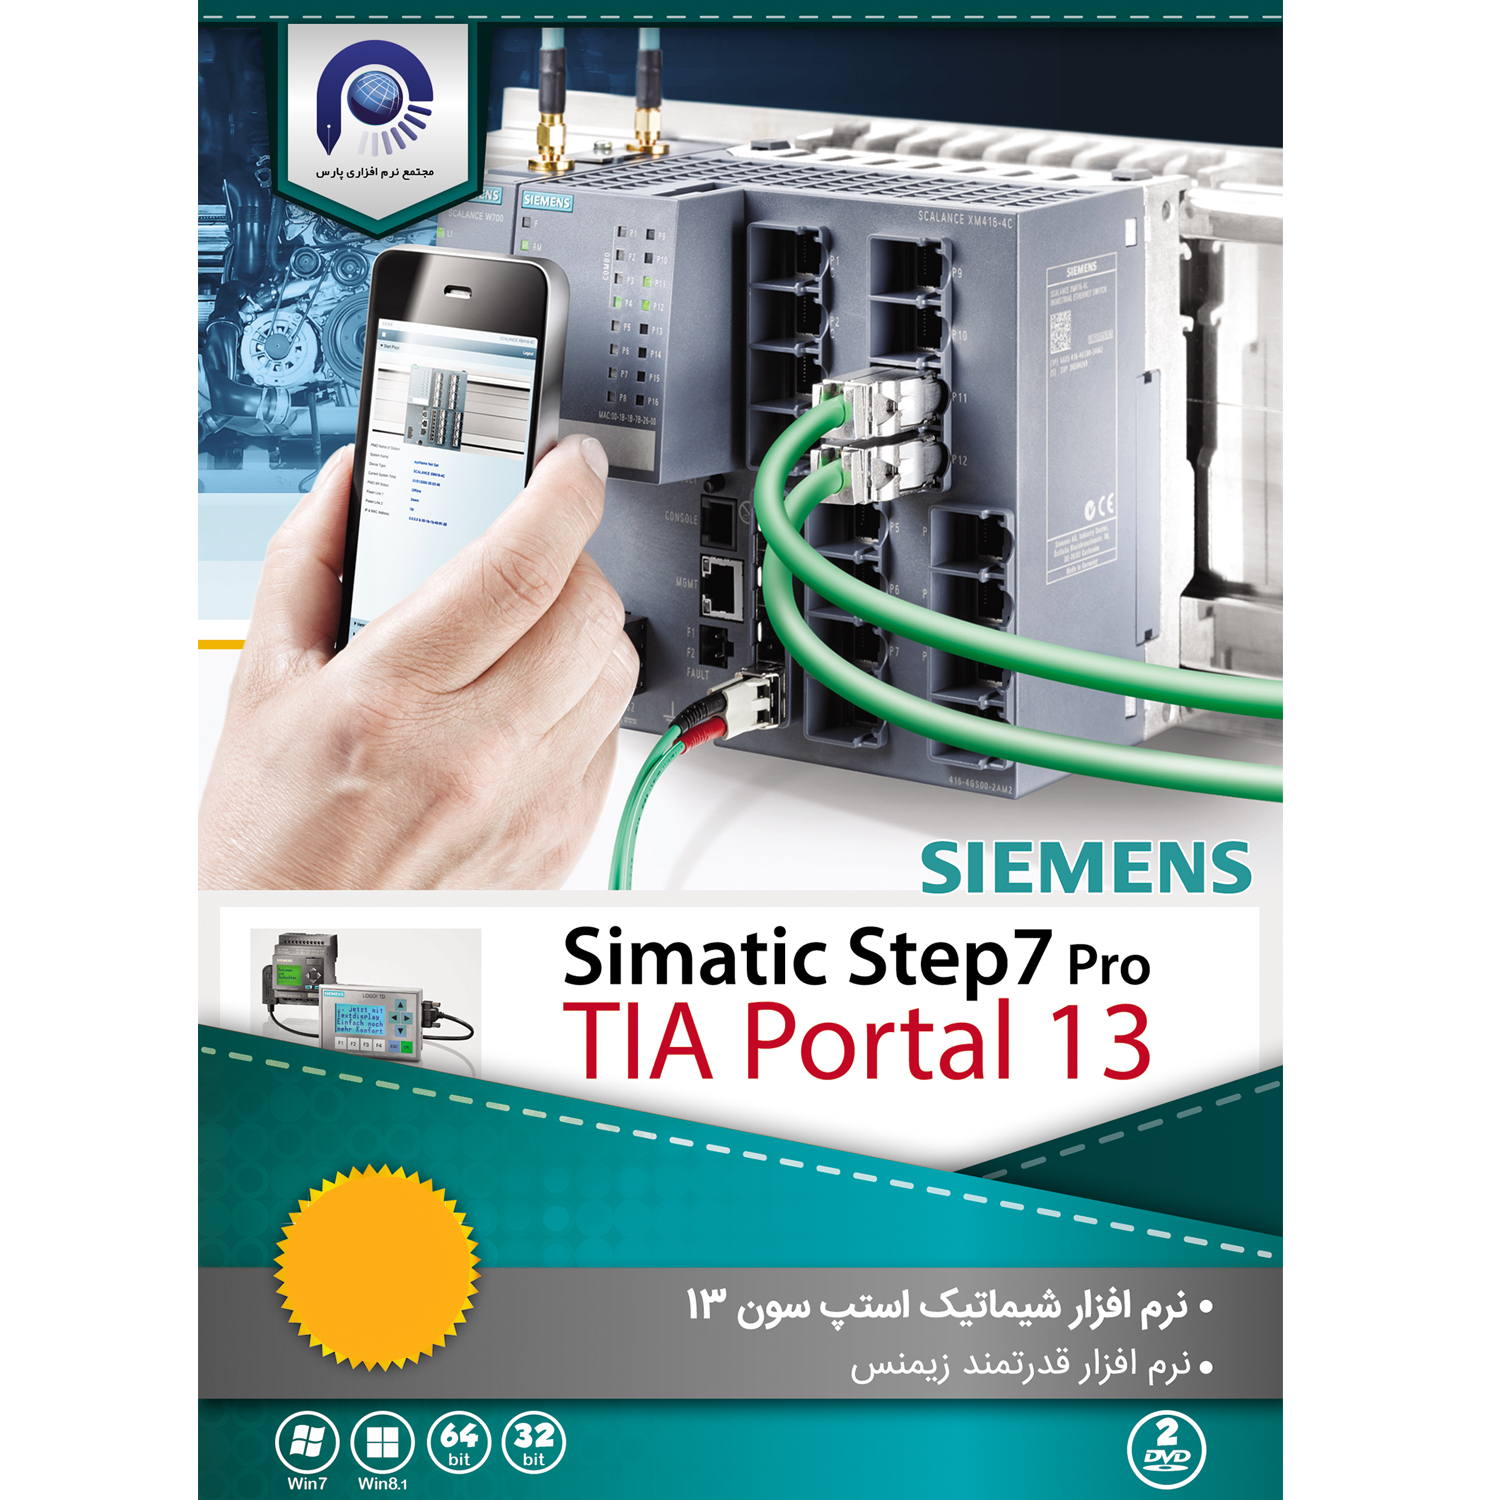 نرم افزار Simatic Step7 Pro 13  نشر مجتمع نرم افزاری پارس